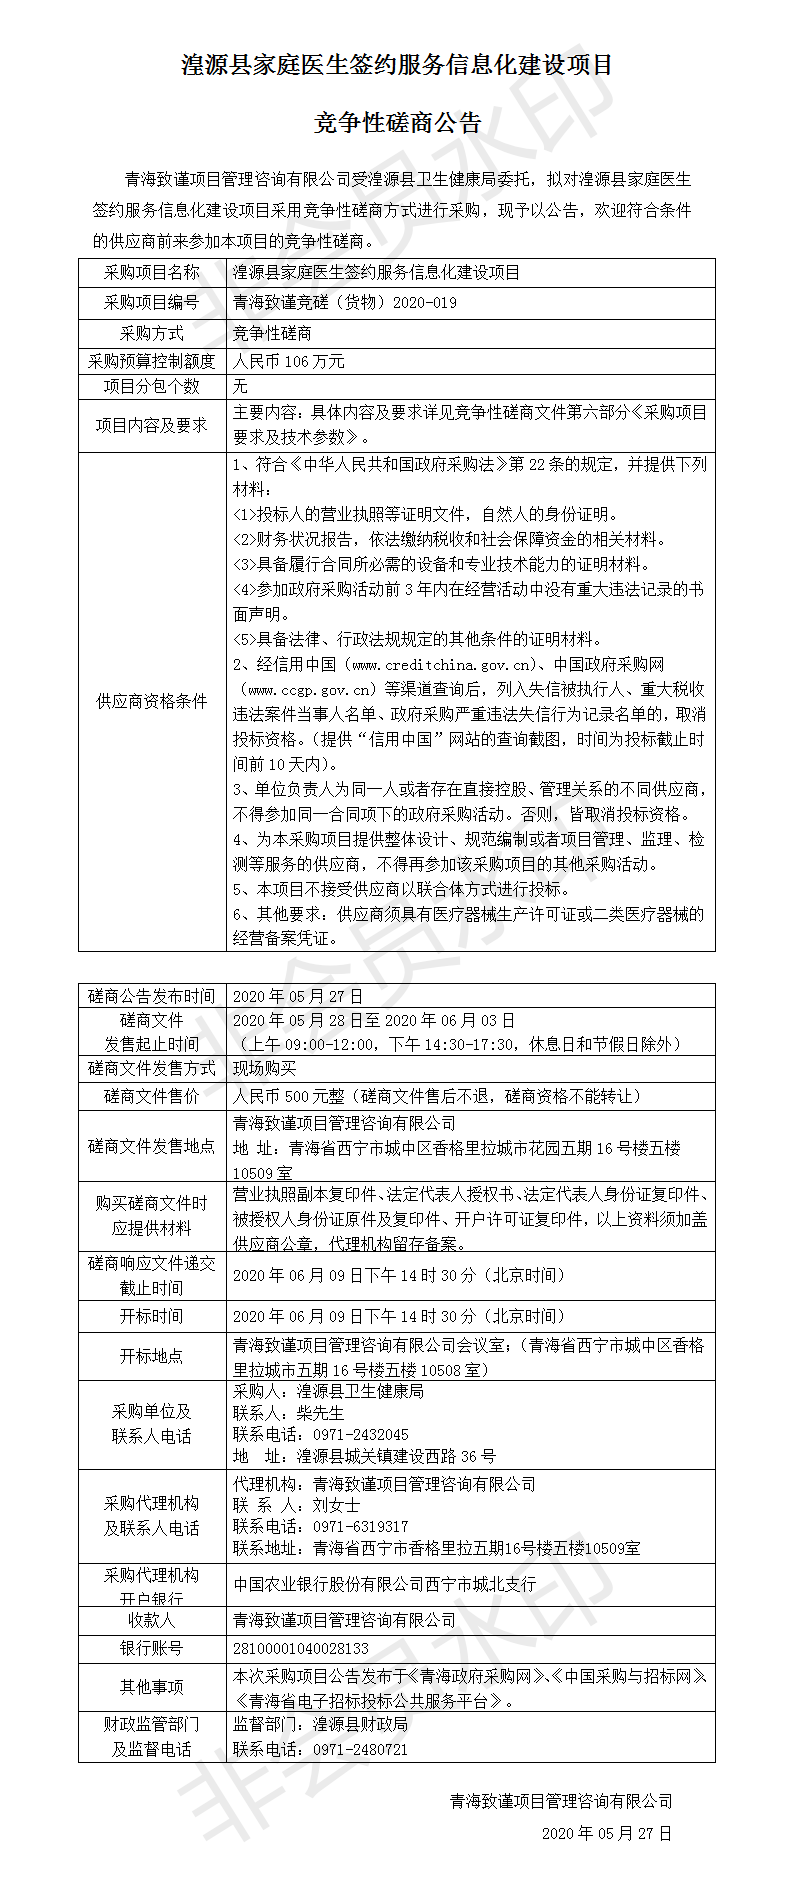 湟源县家庭医生签约服务信息化建设项目公告(1).png